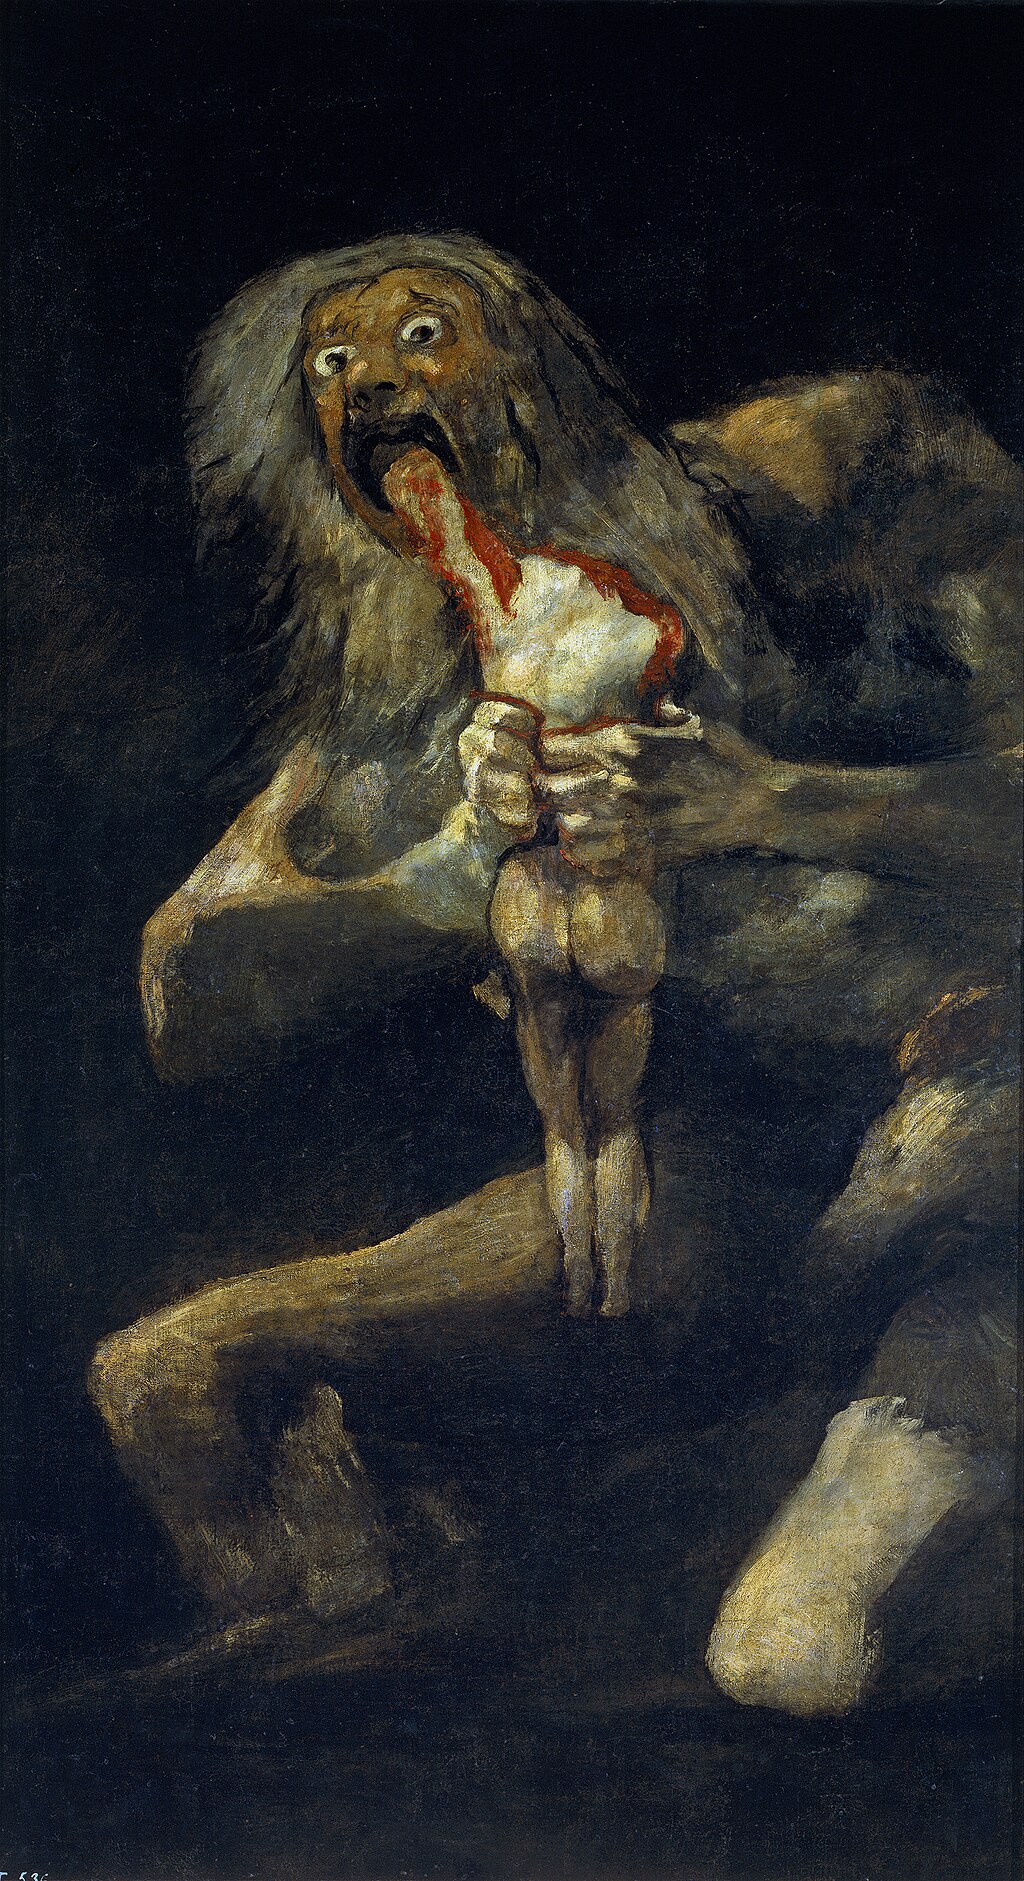 Saturn devorant el seu fill de Francisco Goya - Obres mestres del Prado